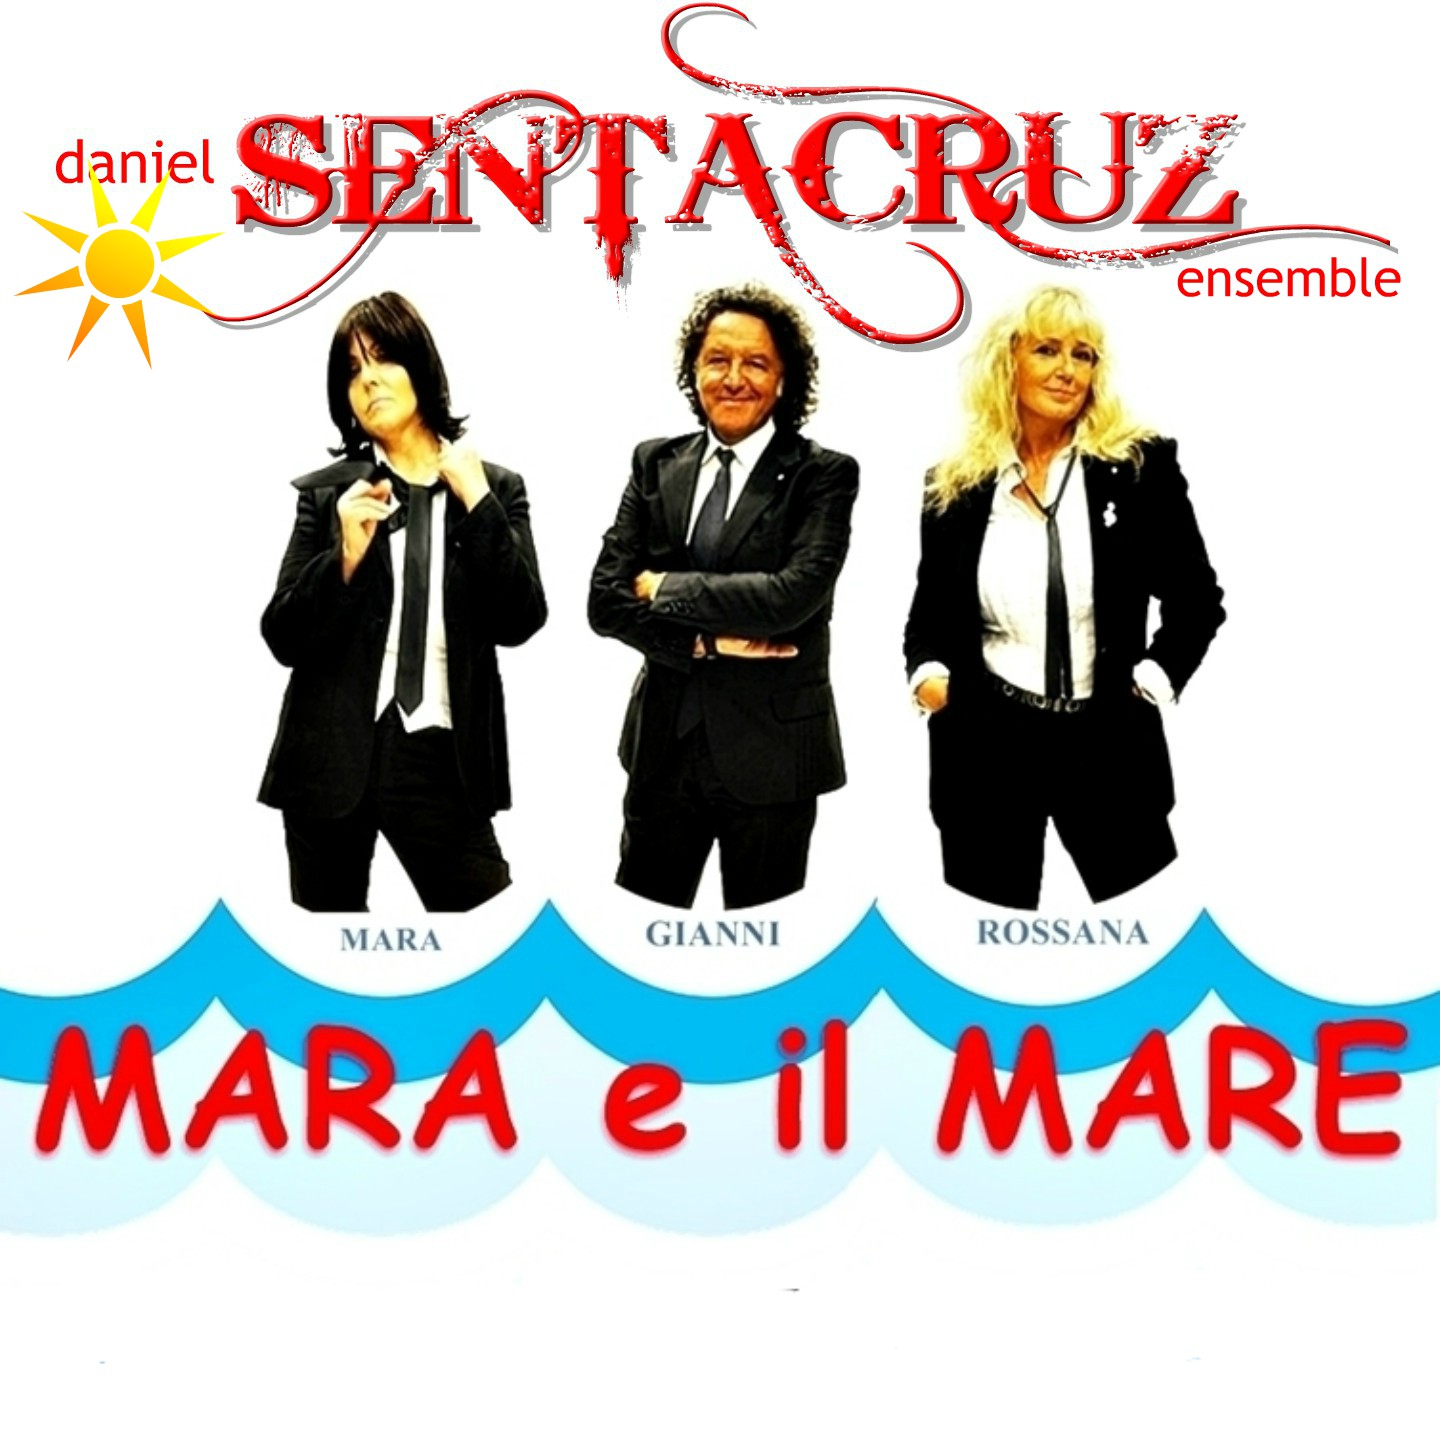 Daniel Sentacruz Ensemble con 